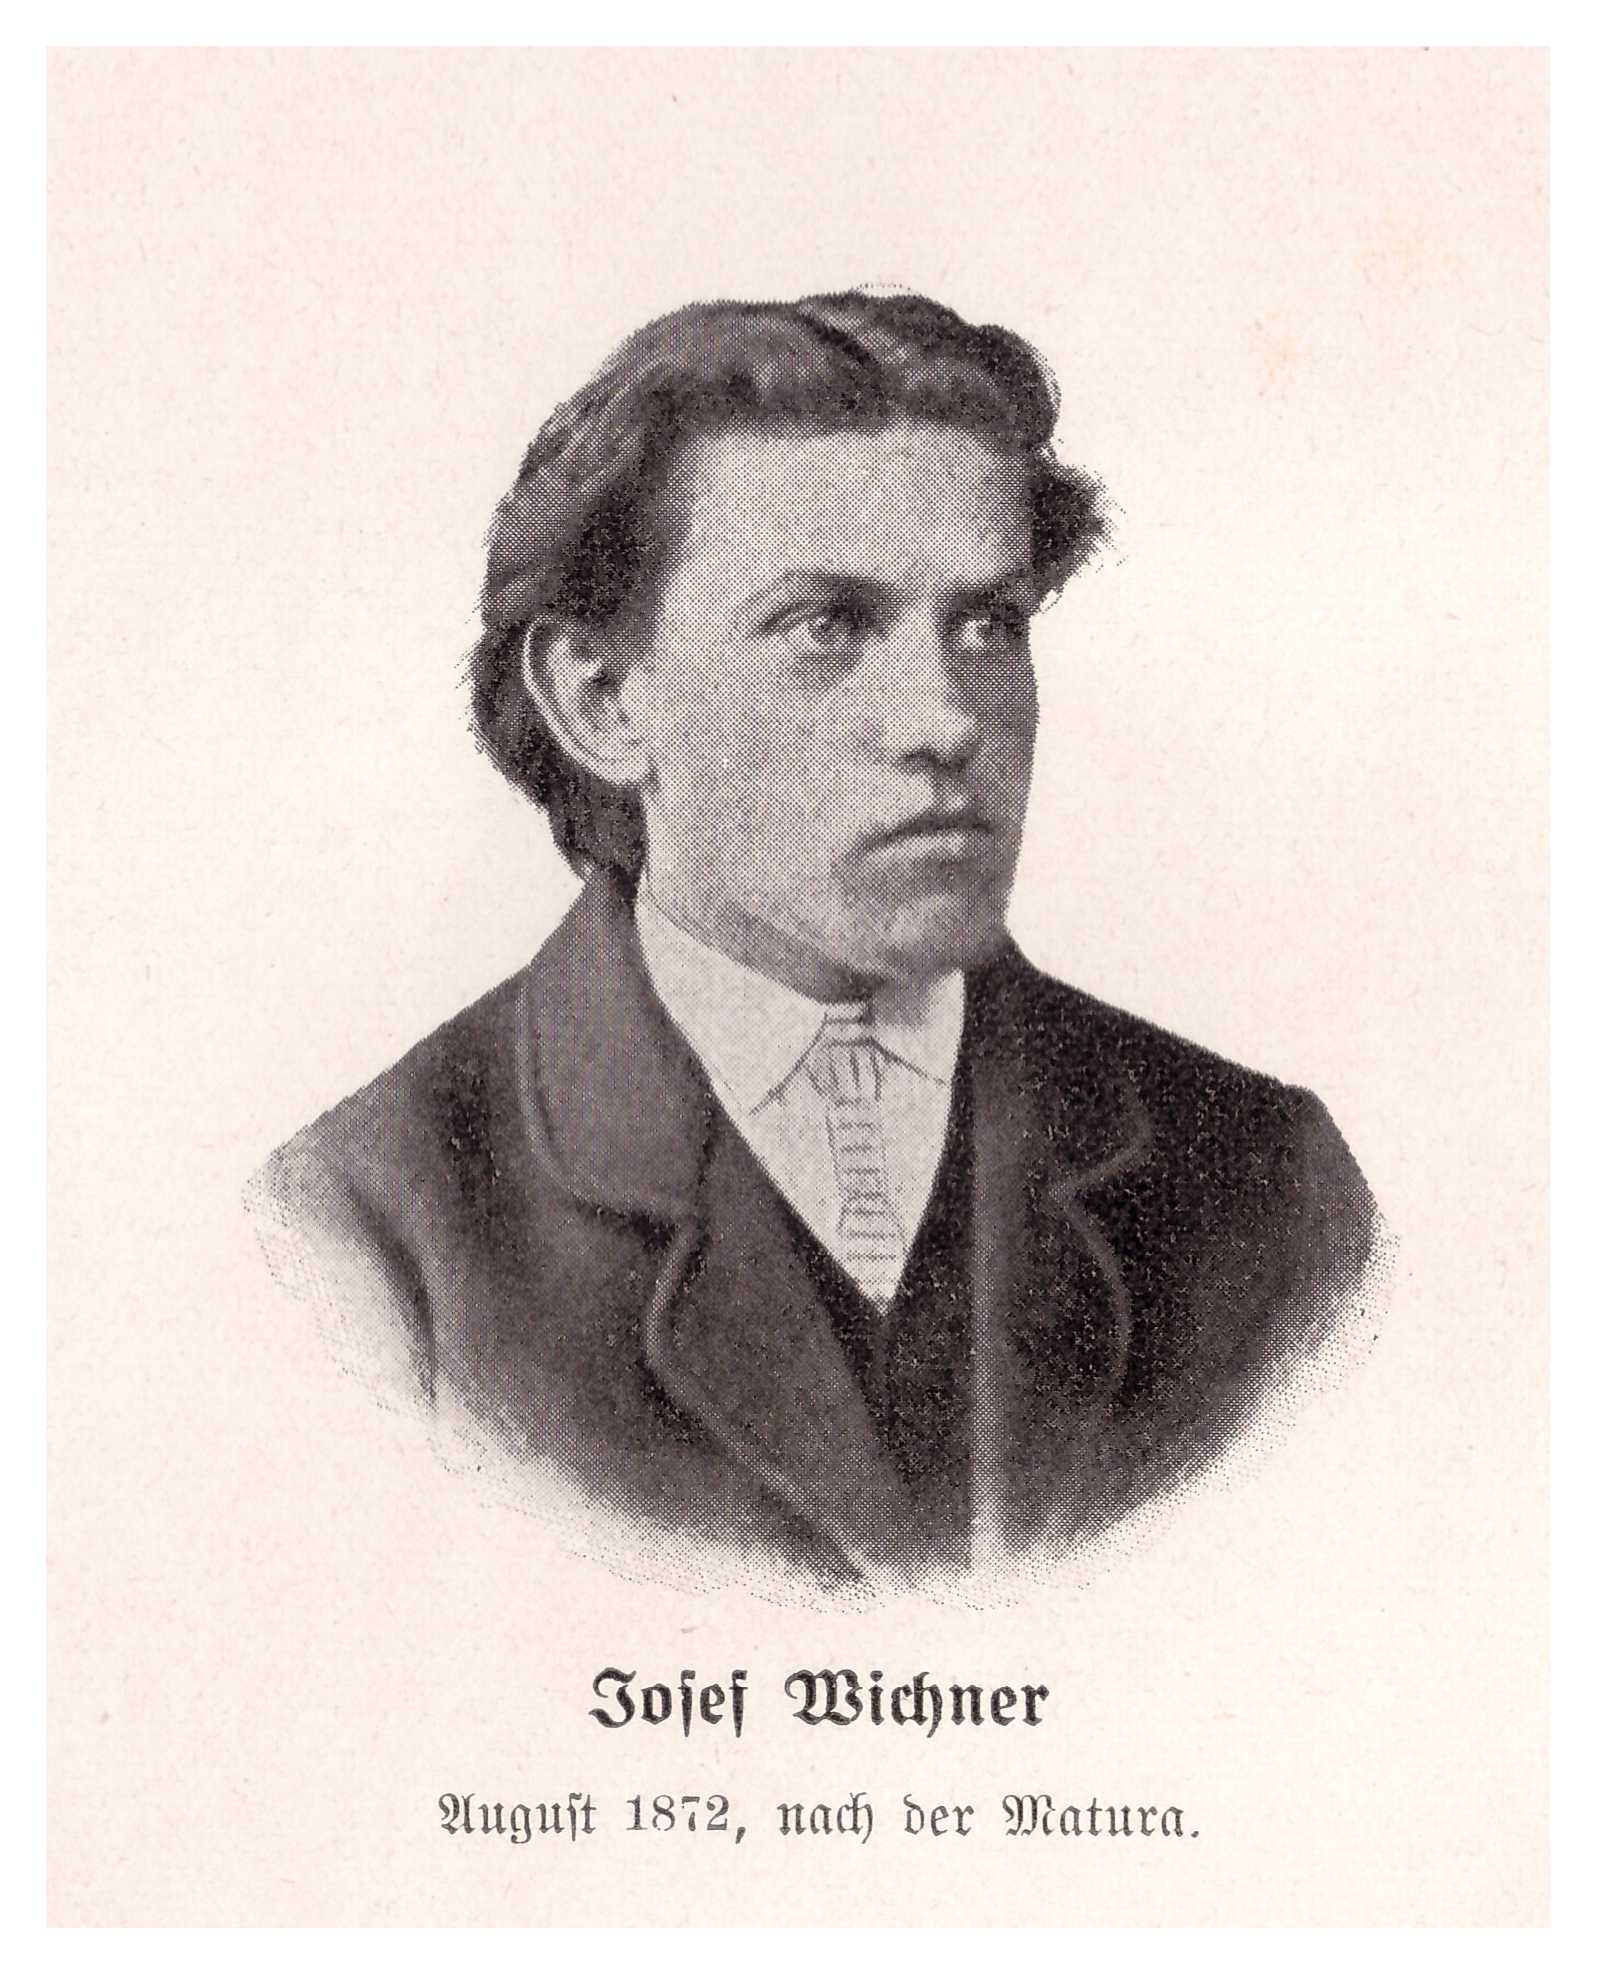 Josef Wichner